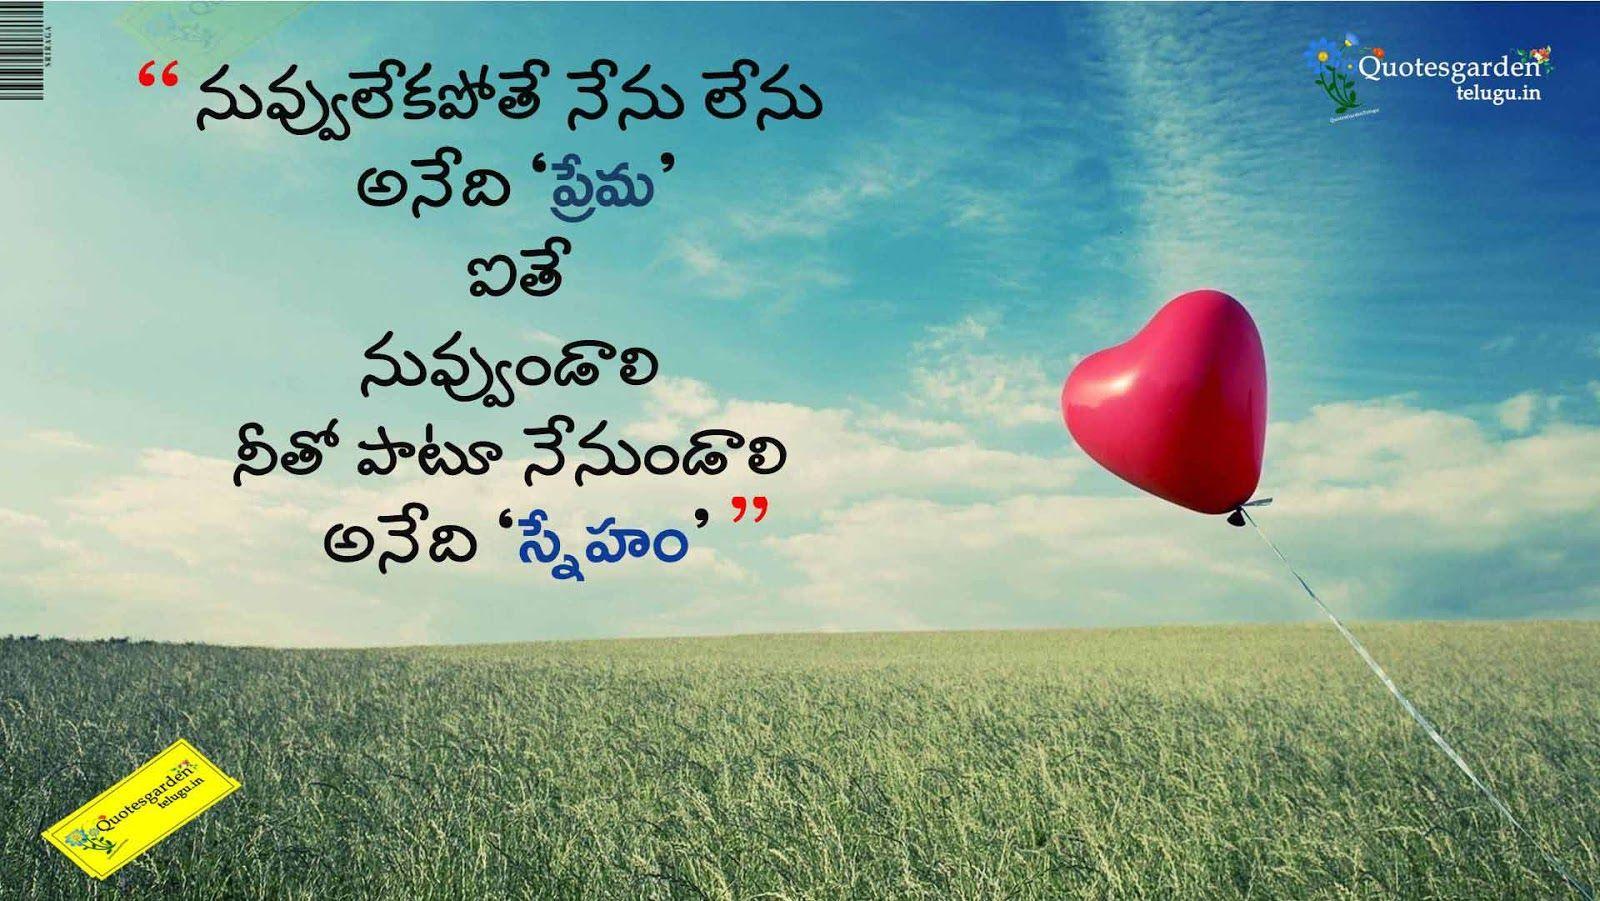 Heart Touching Quotes About Broken Friendship In Telugu Best Telugu